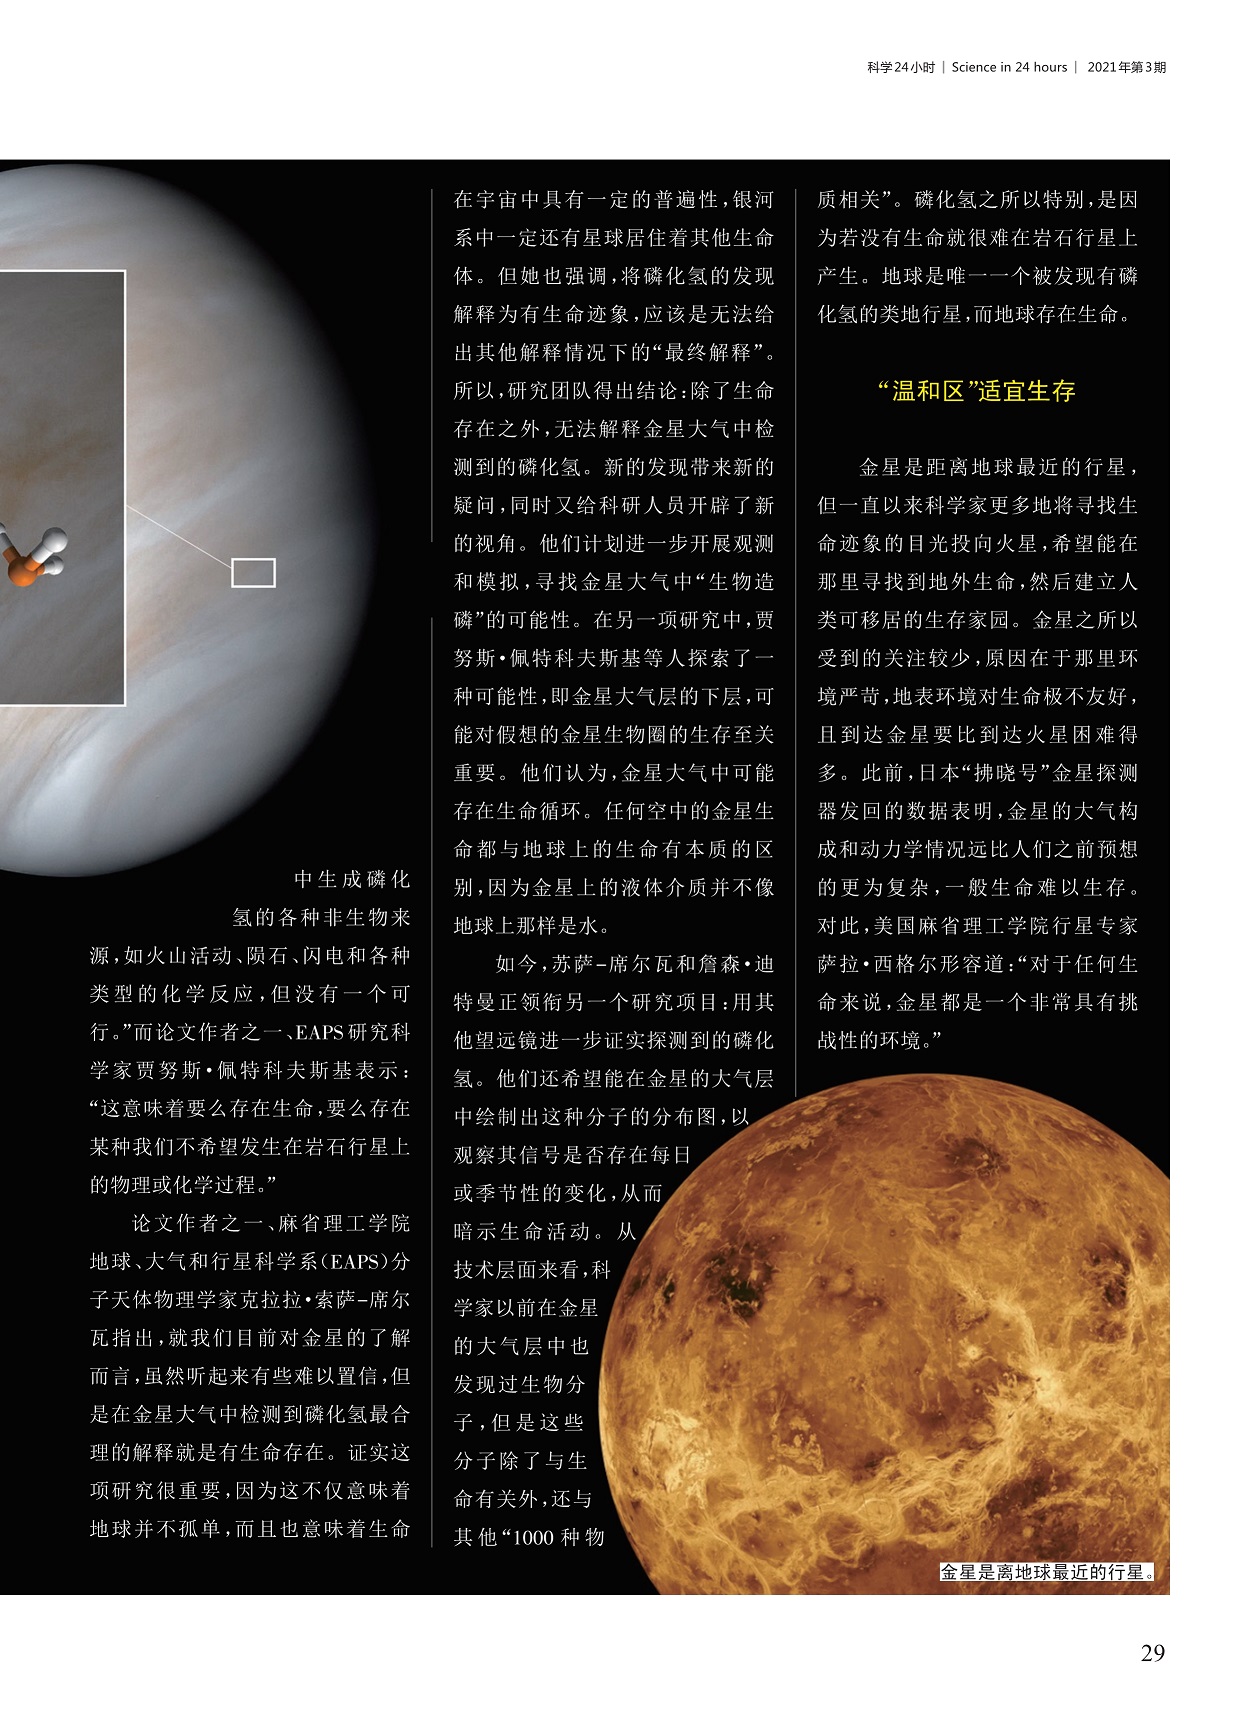 金星存在生命迹象 中国数字科技馆